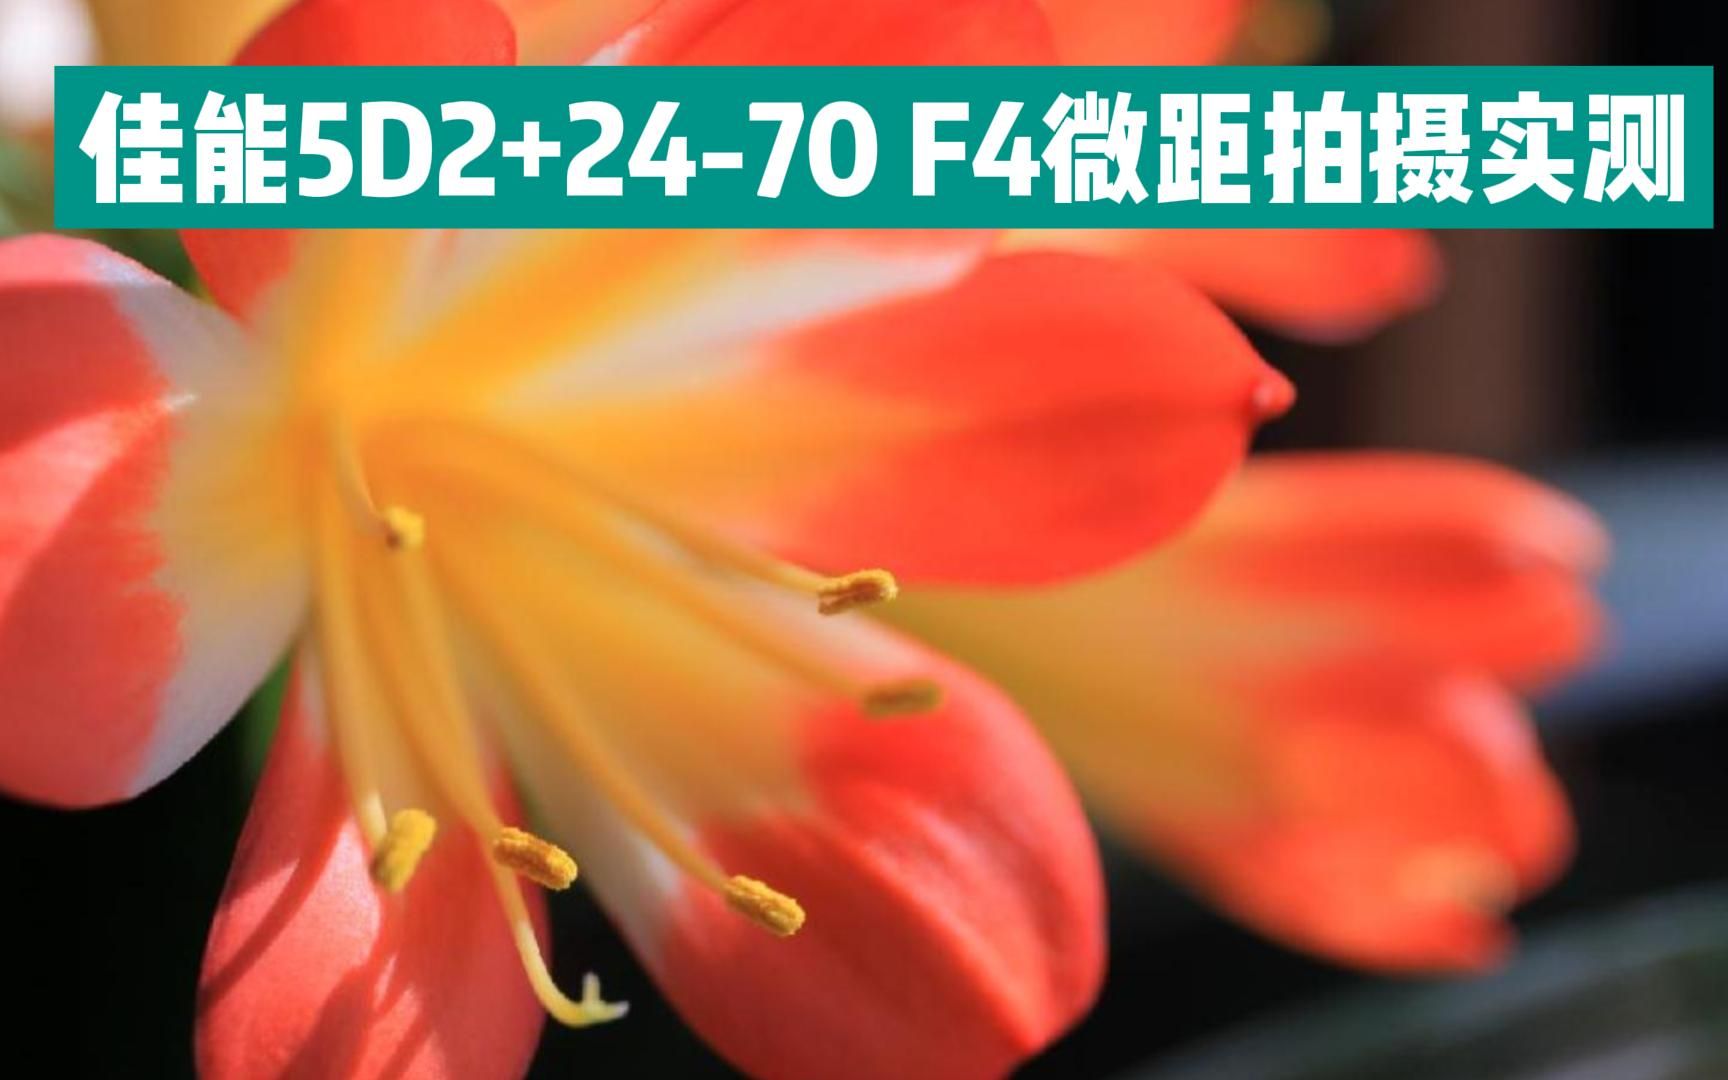 佳能5D2+24-70 F4 macro IS L 微距拍摄实测